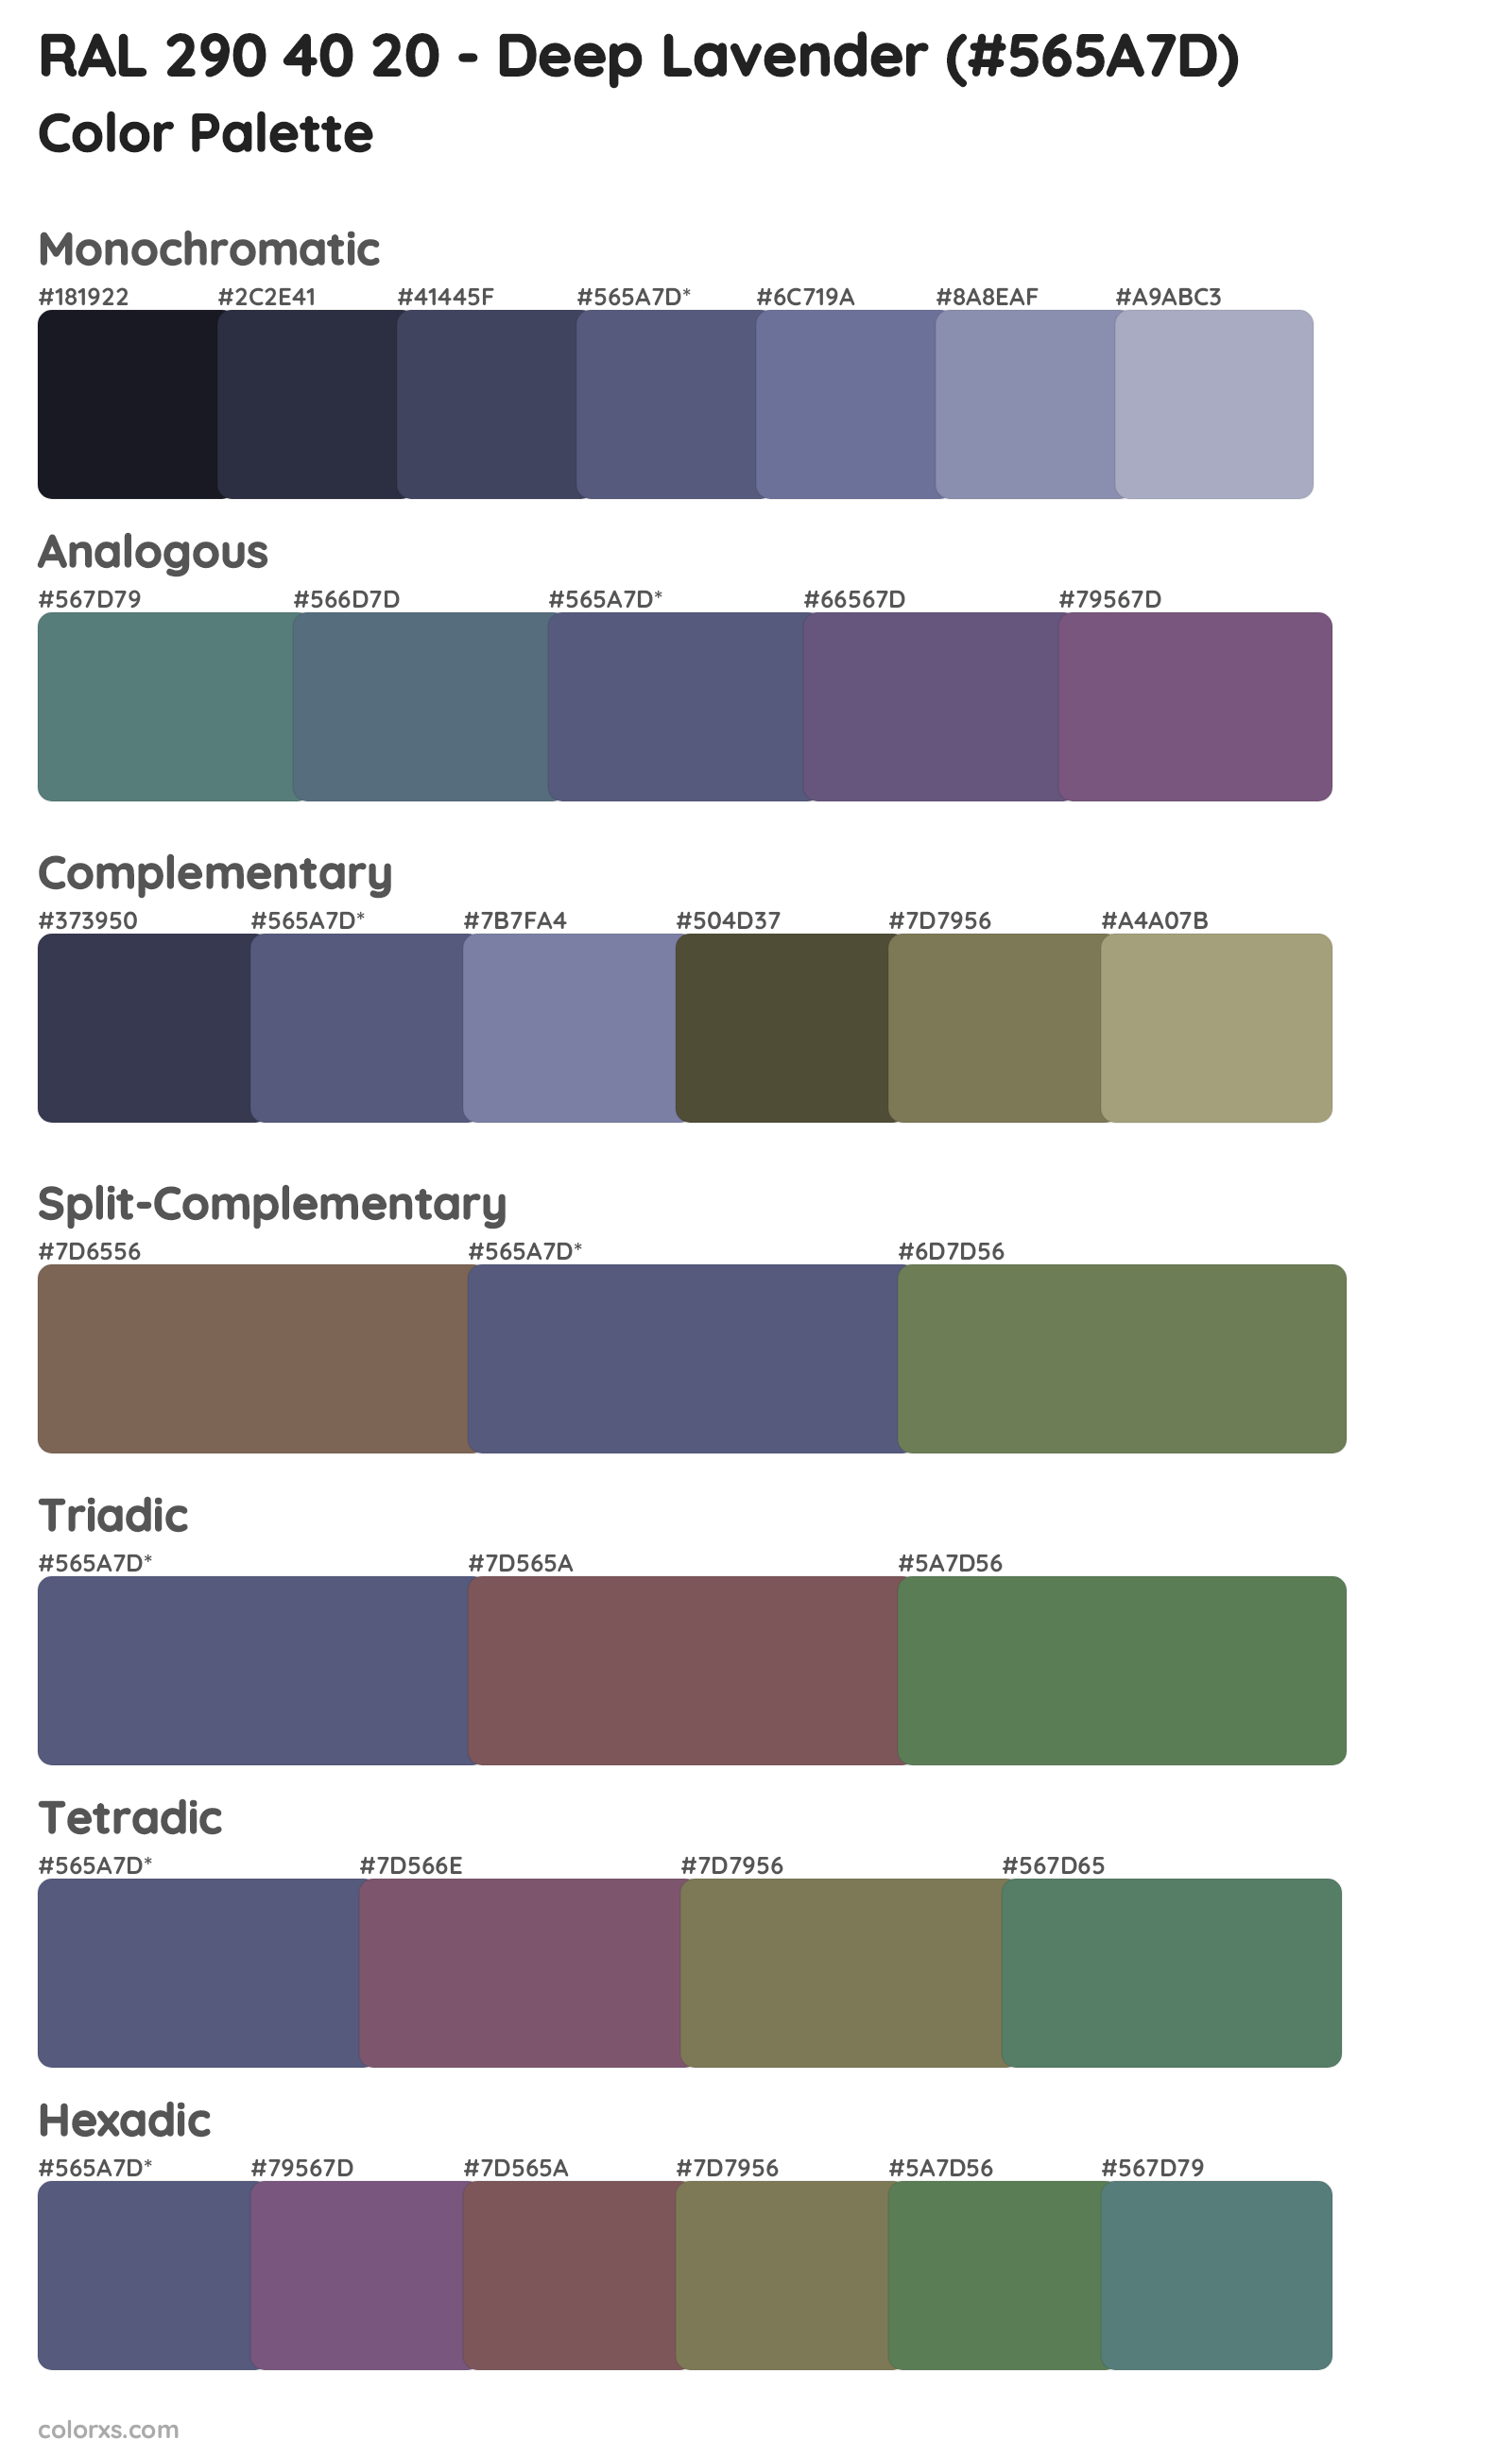 RAL 290 40 20 - Deep Lavender Color Scheme Palettes